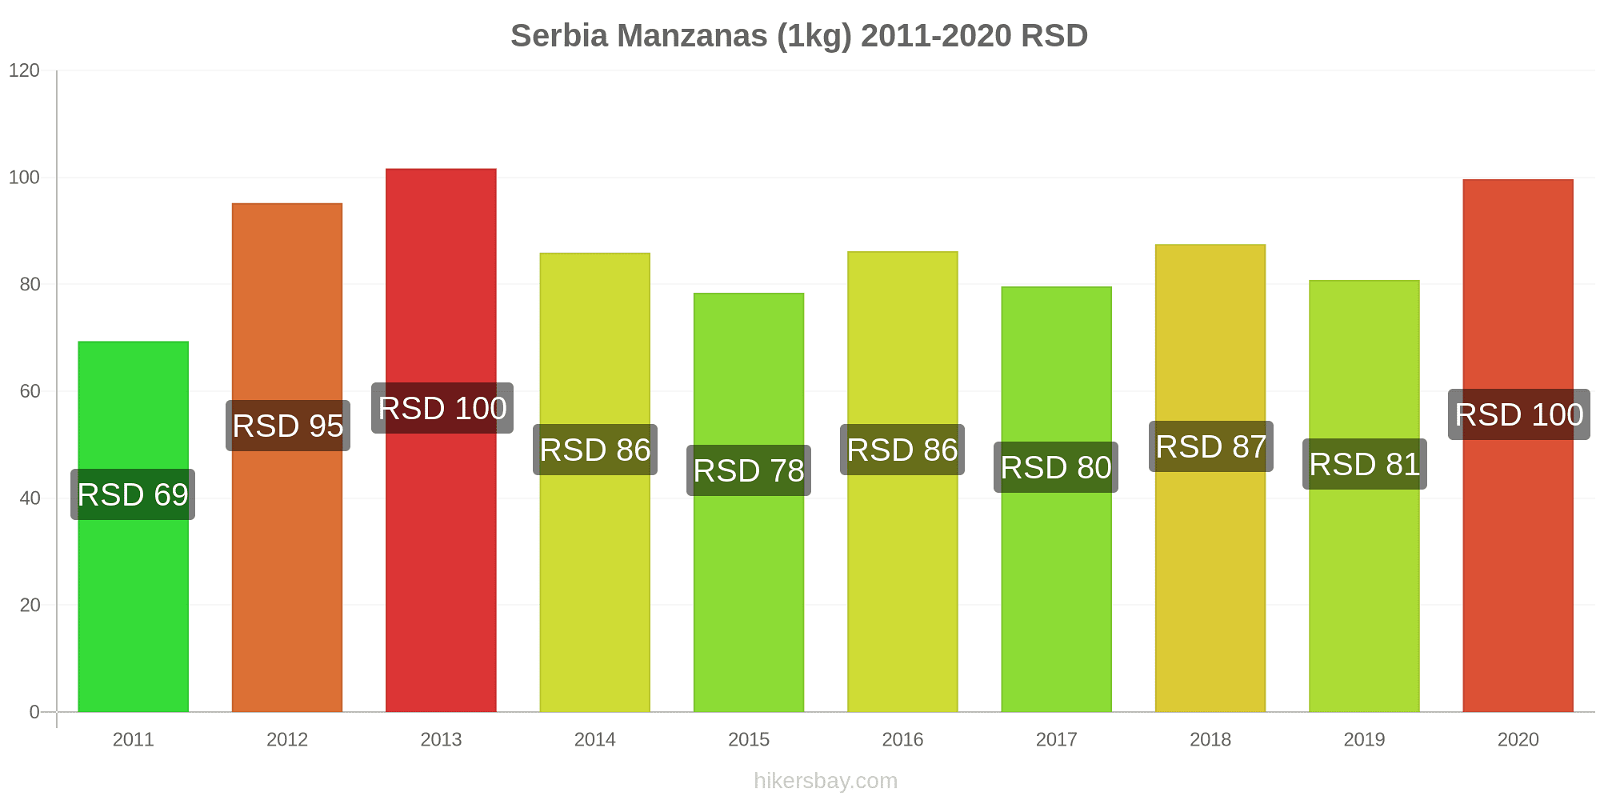 Serbia cambios de precios Manzanas (1kg) hikersbay.com